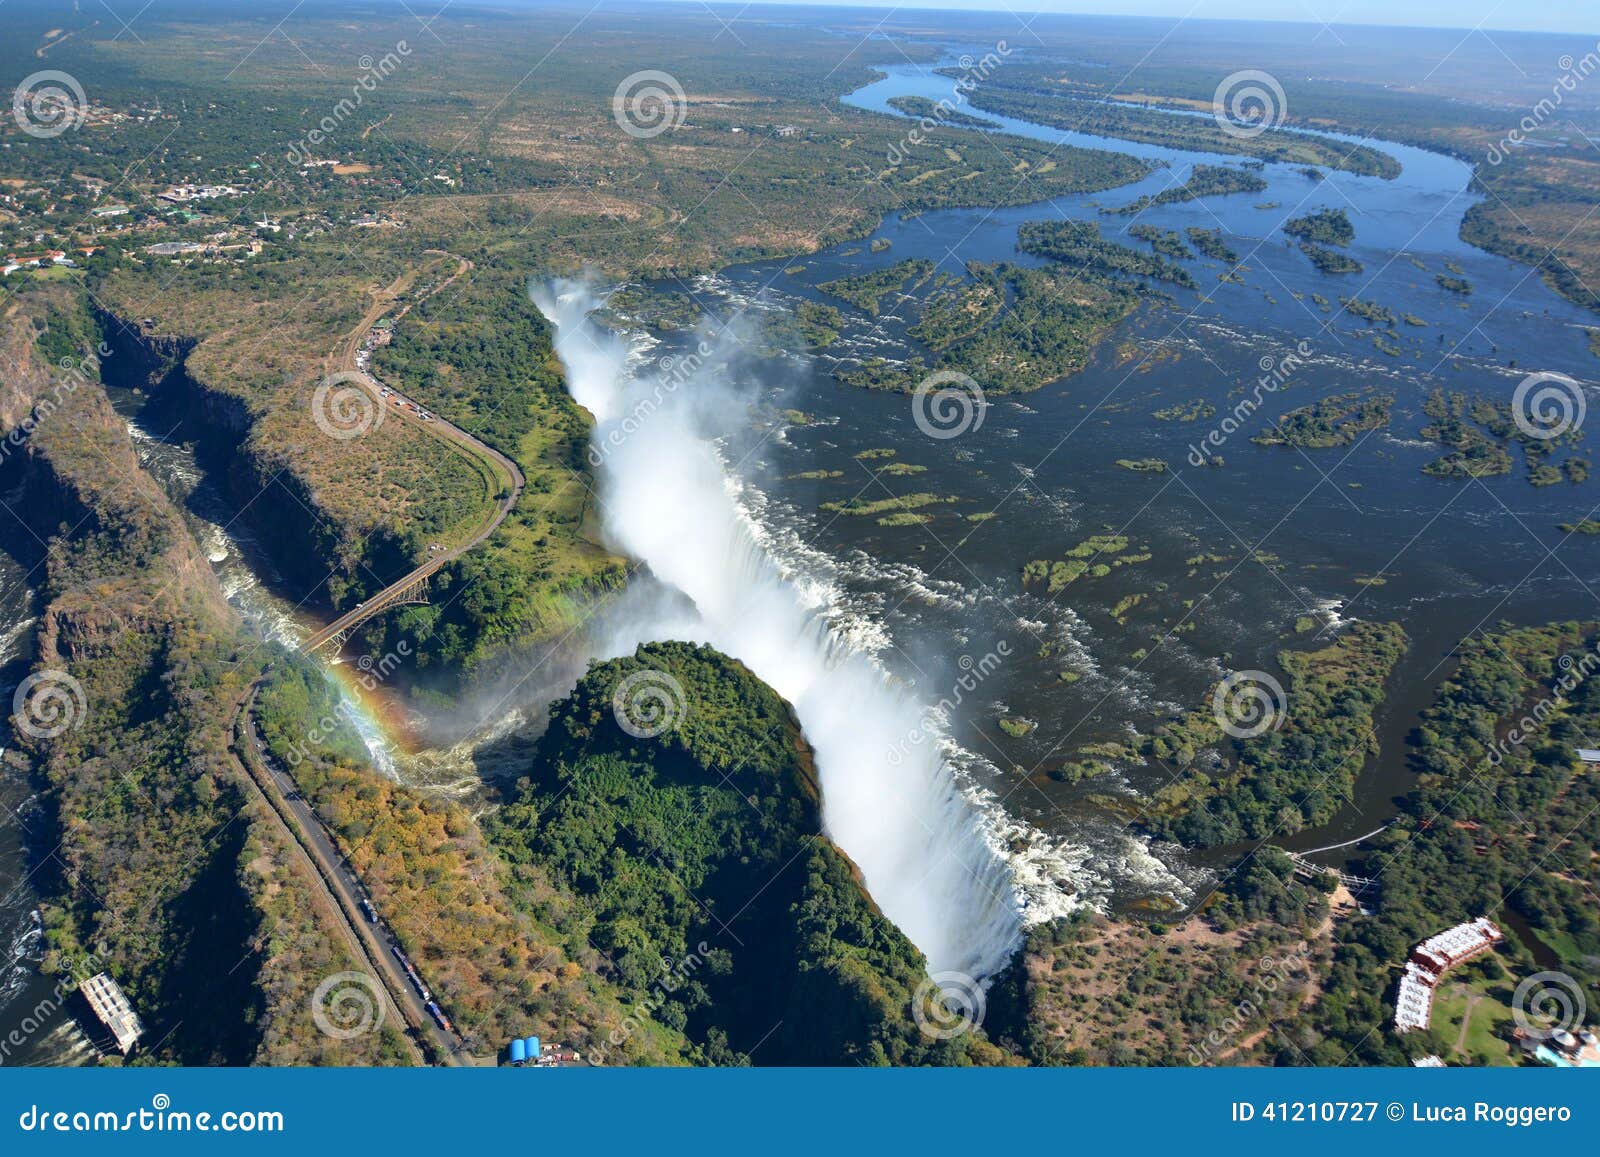 zambezi river and victoria falls. zimbabwe